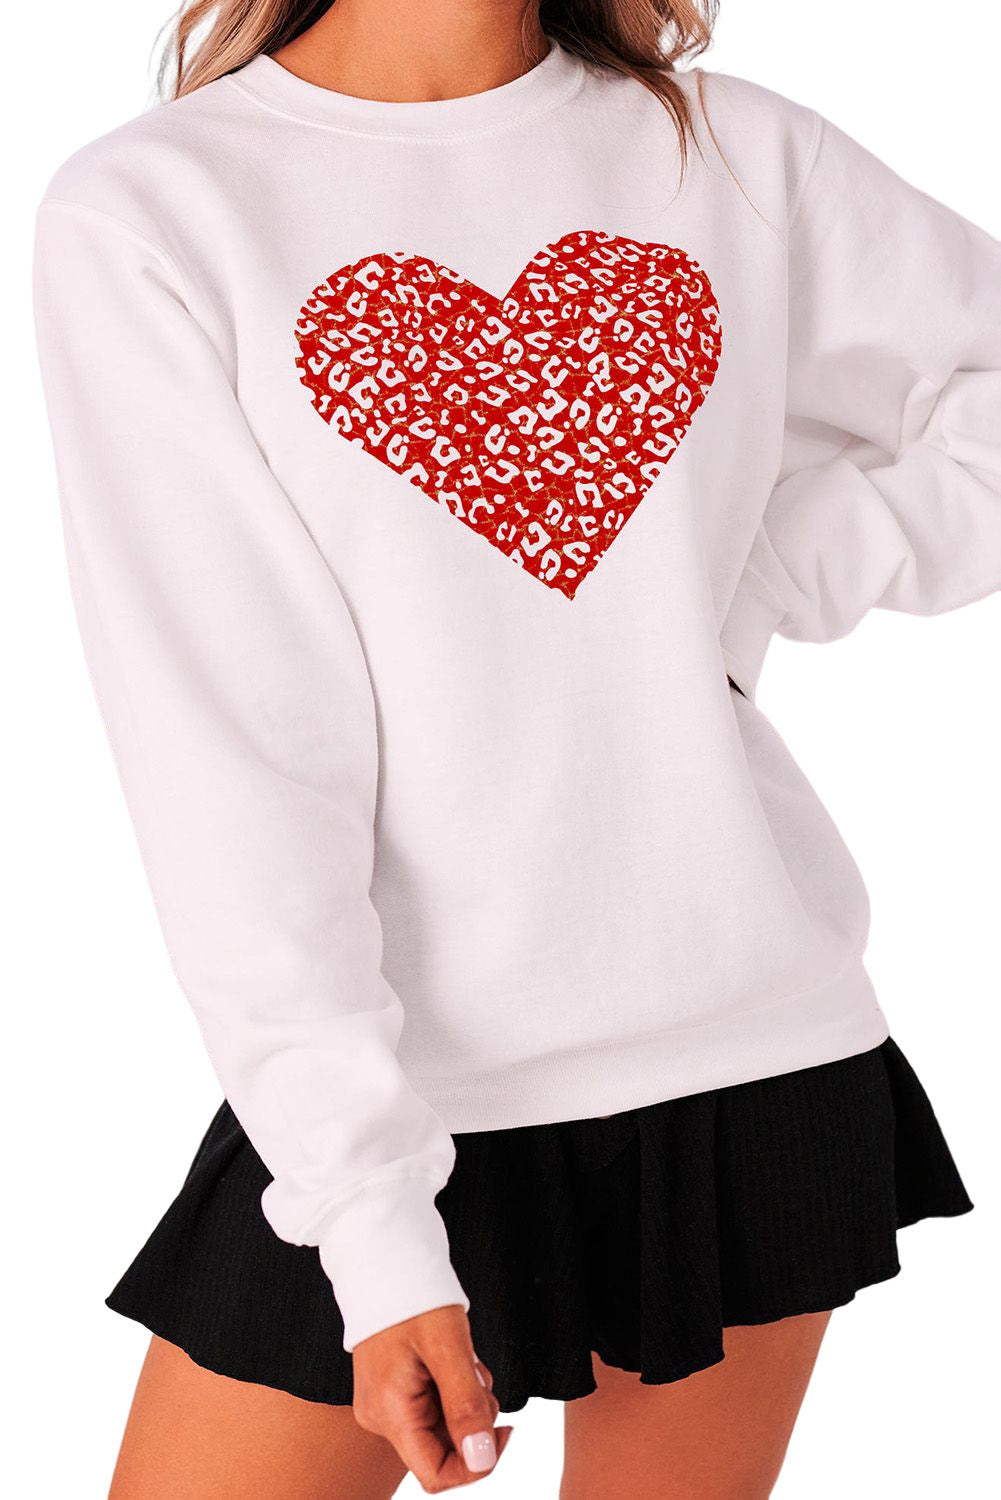 Beige Valentine's Day Heart Graphic Pullover Sweatshirt Graphic Sweatshirts JT's Designer Fashion